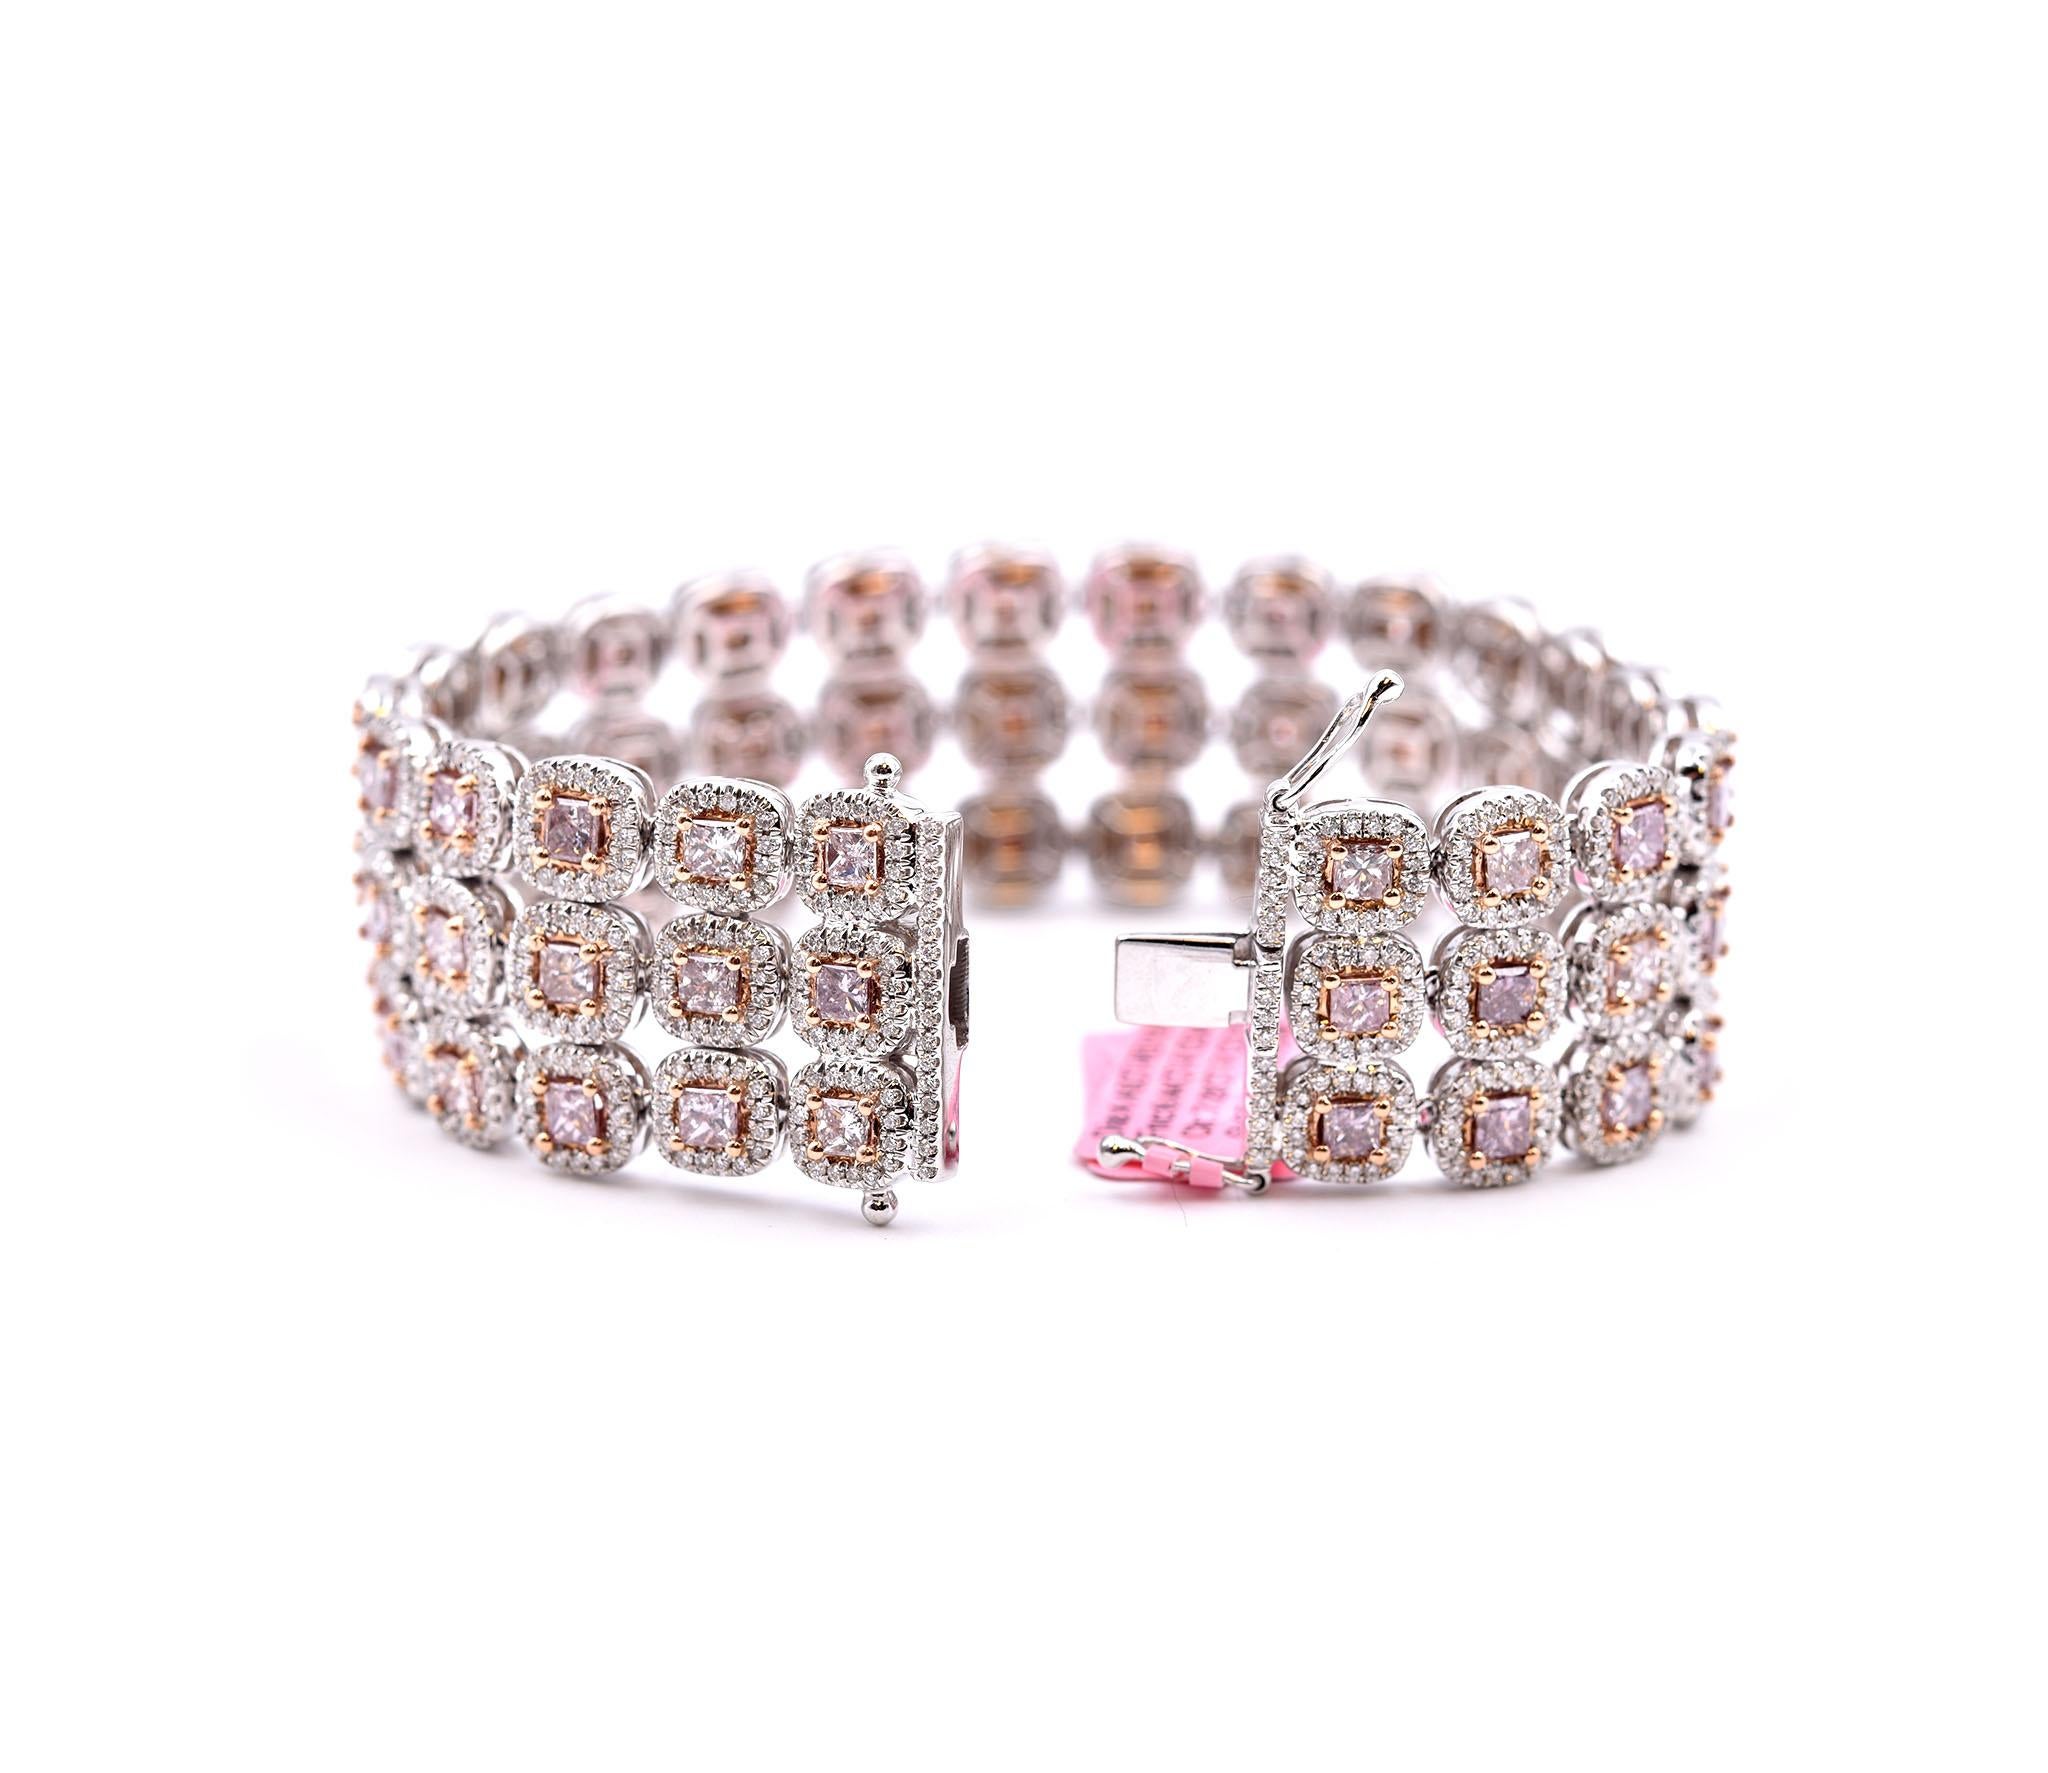 170 karat pink diamond